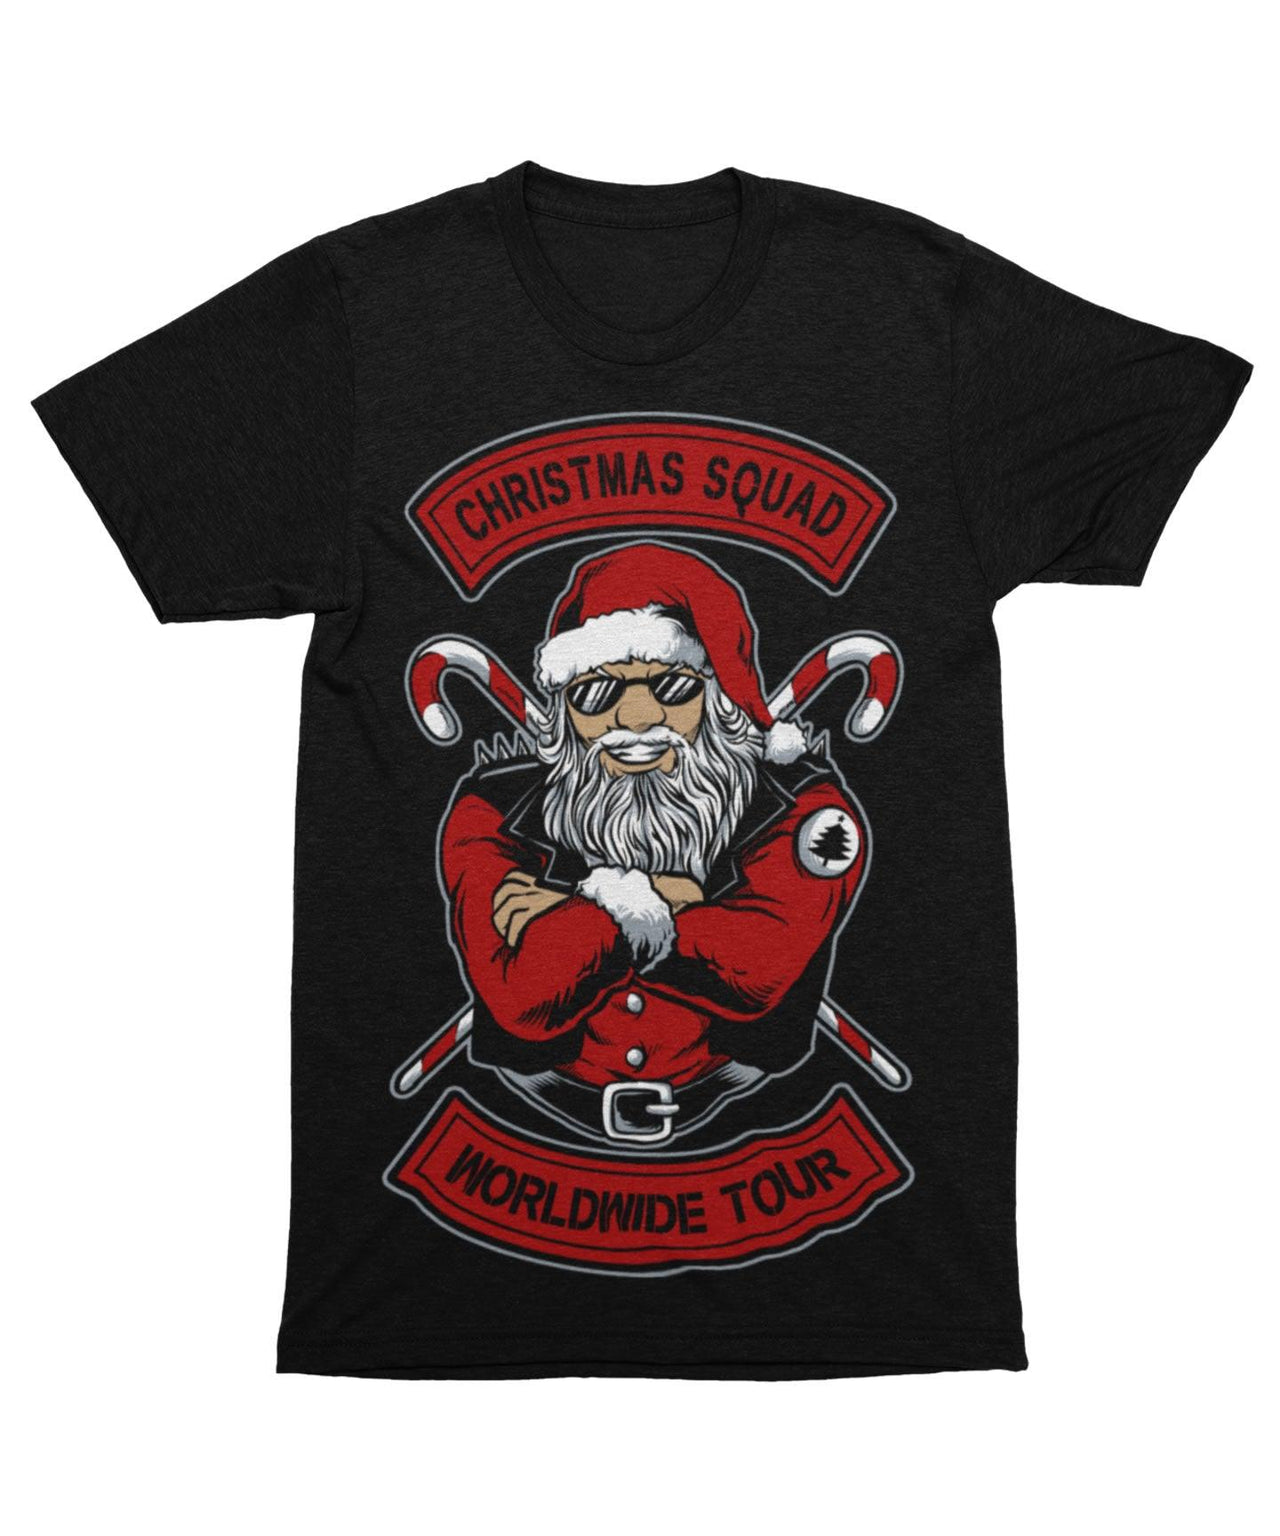 Christmas Squad Worldwide Tour Unisex Christmas Unisex T-Shirt 8Ball